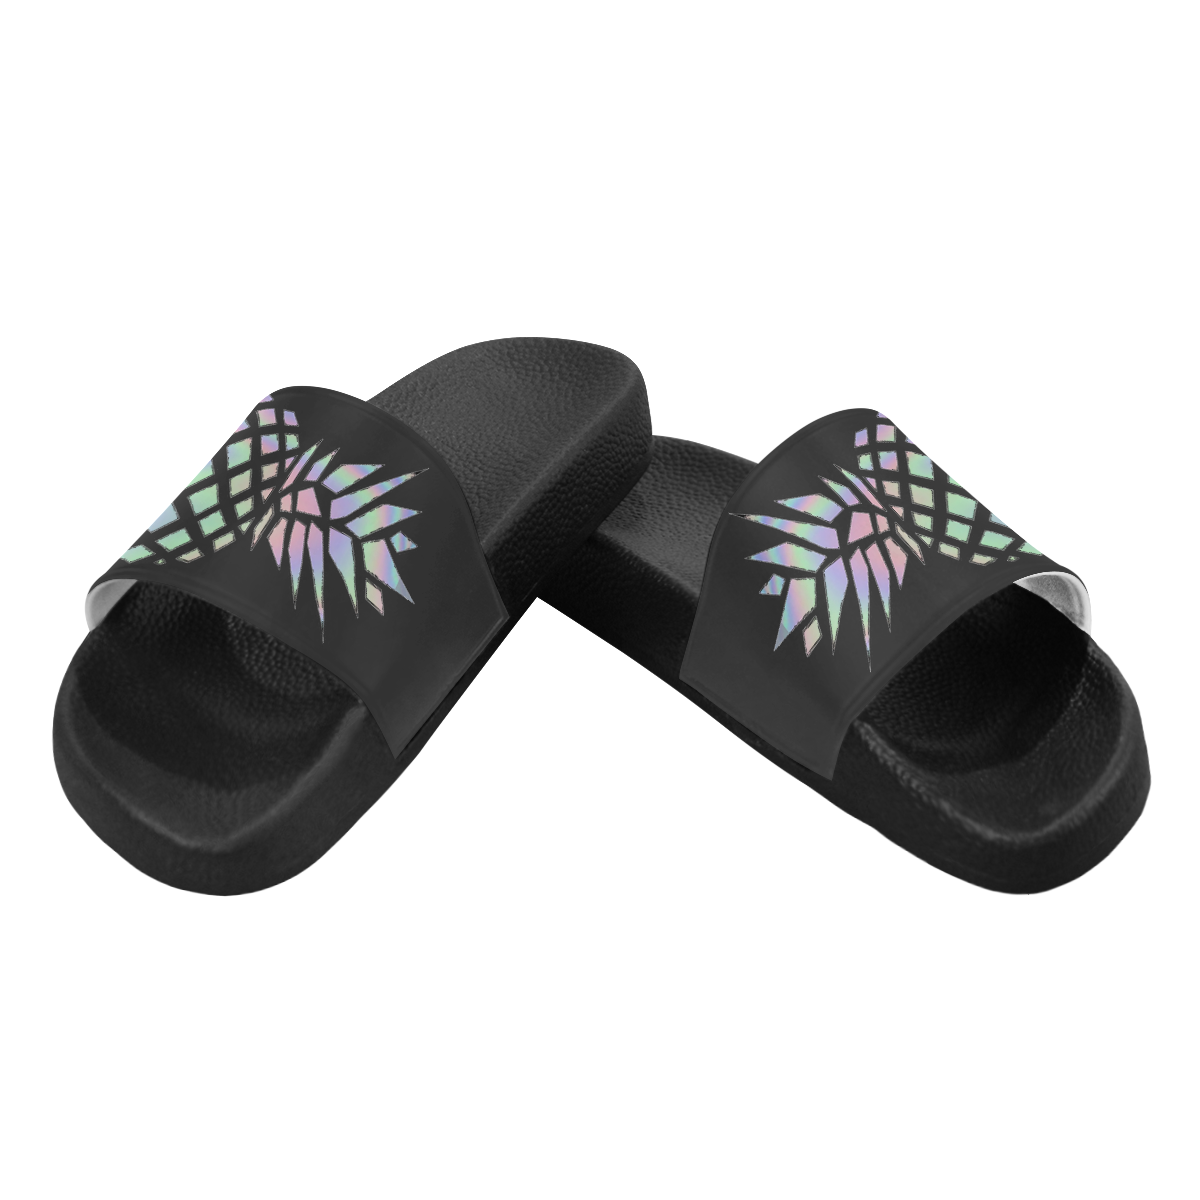 Black Holorgram Sandals Men's Slide Sandals/Large Size (Model 057)